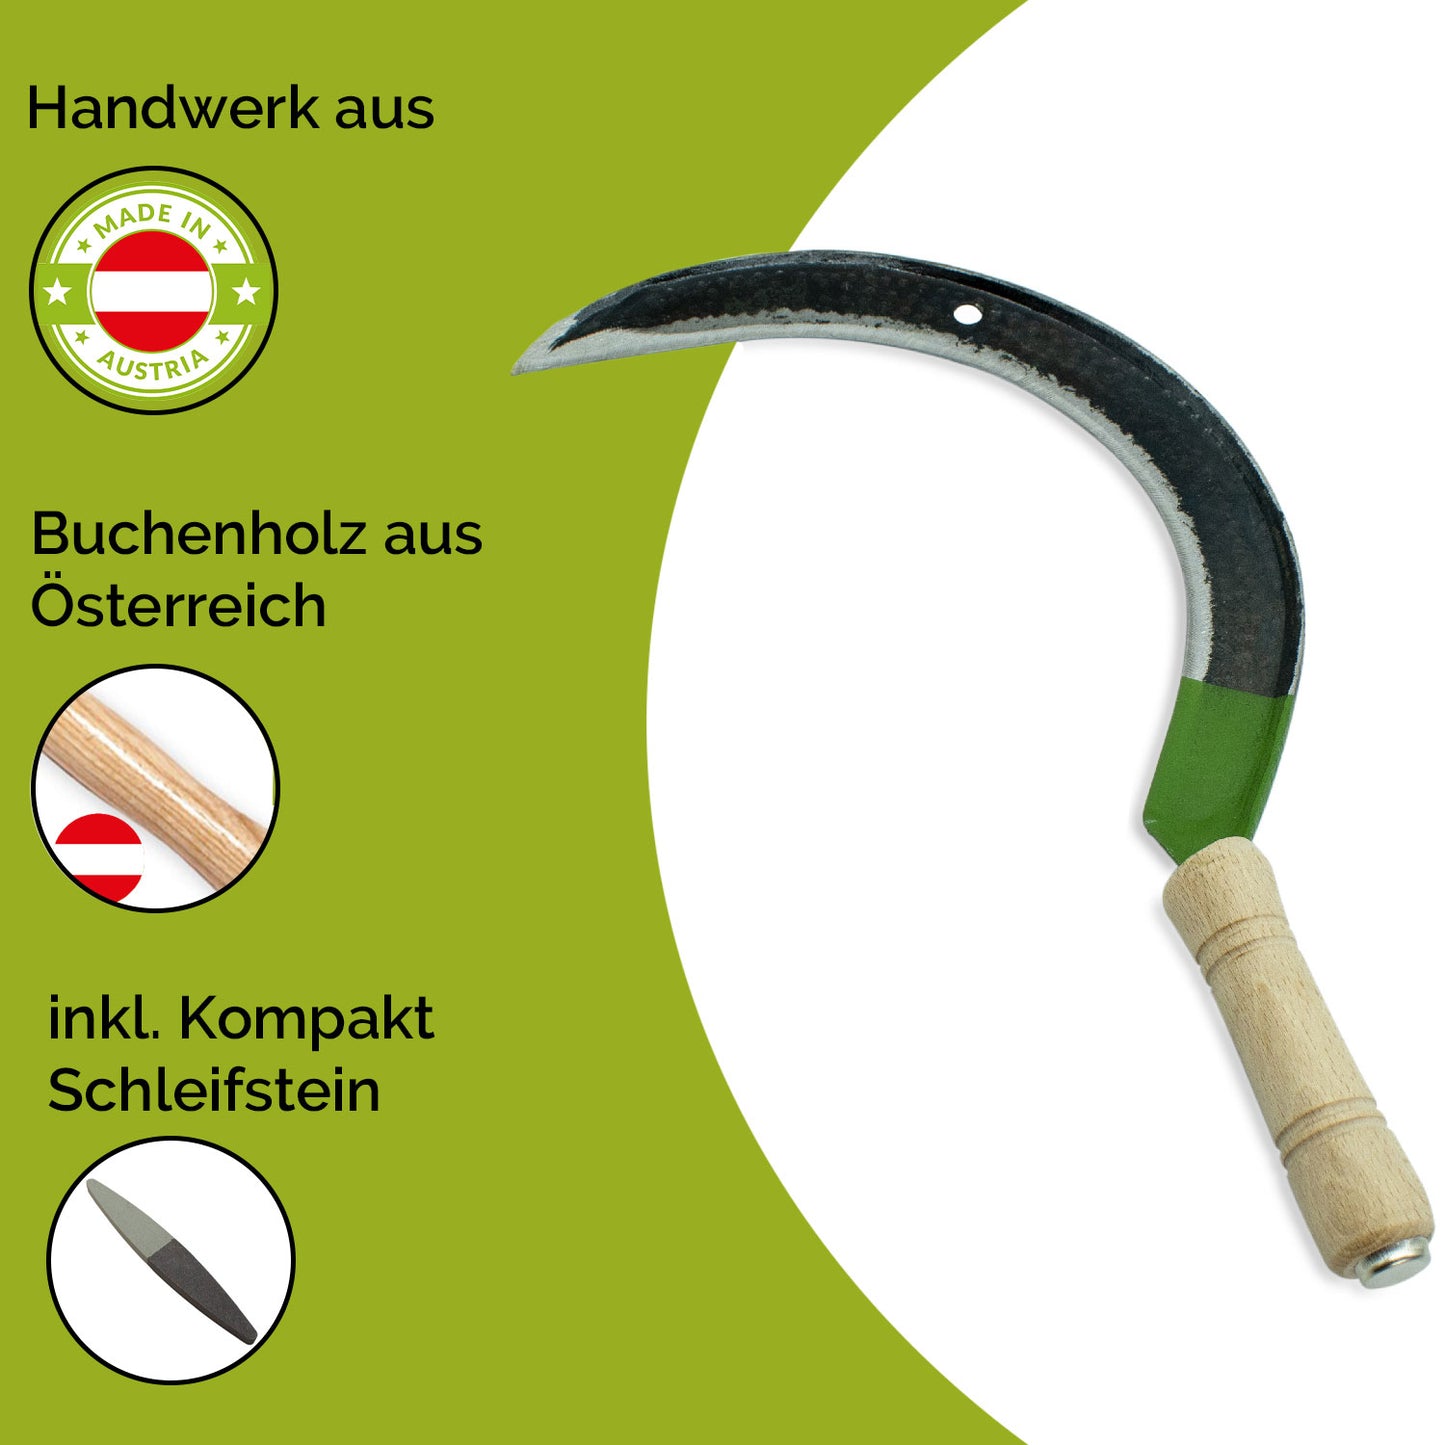 Blattsichel mähfertig gedengelt - inkl. gratis Schleifstein - mit Buchenholzstiel - Rechtshänder - Made in Austria